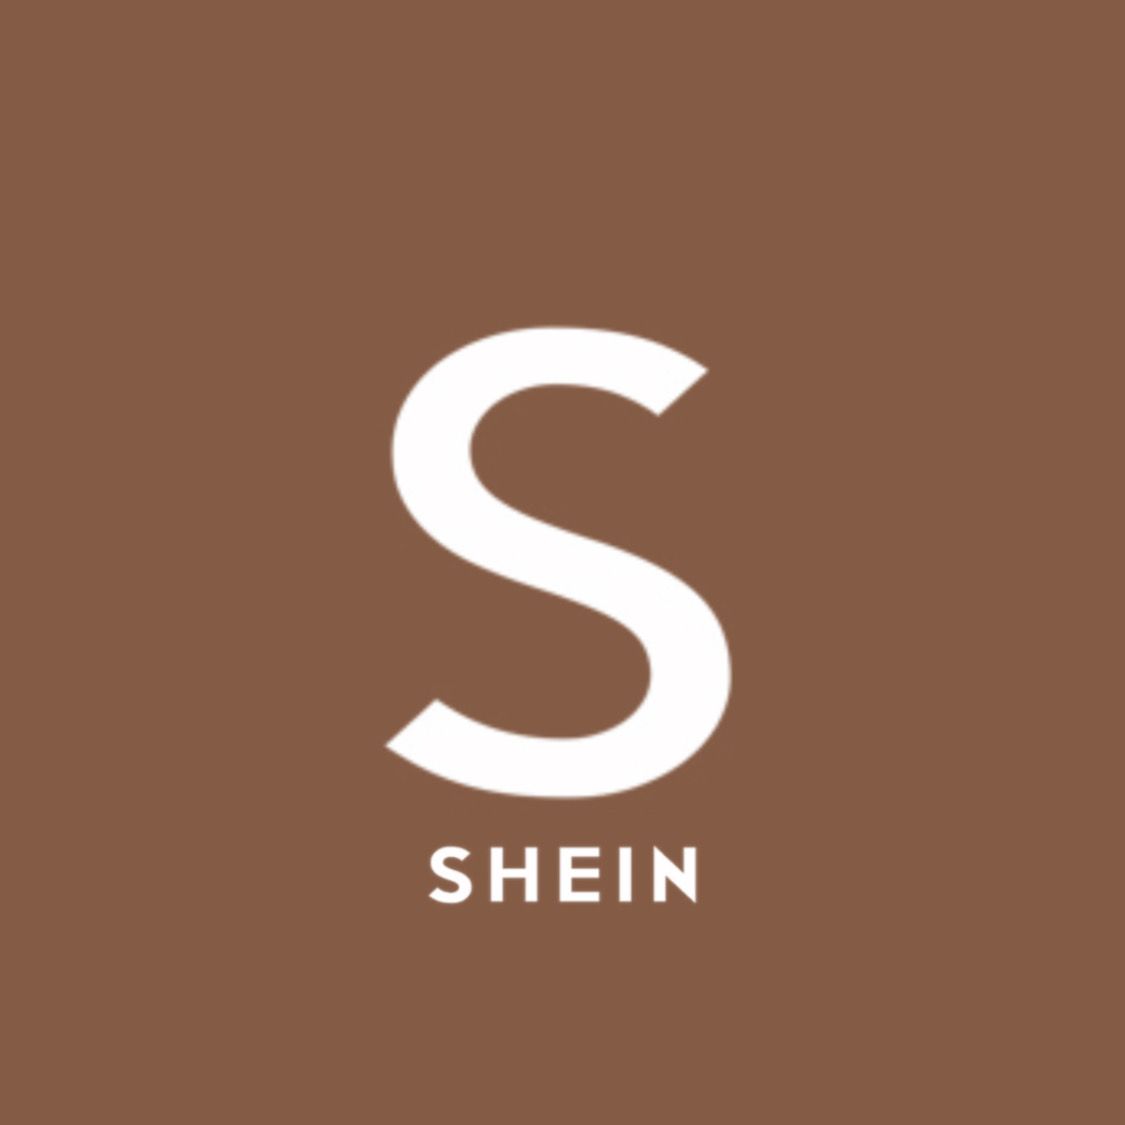 Shein” App icon (brown aesthetic). Ios app icon design, App icon, Ios icon